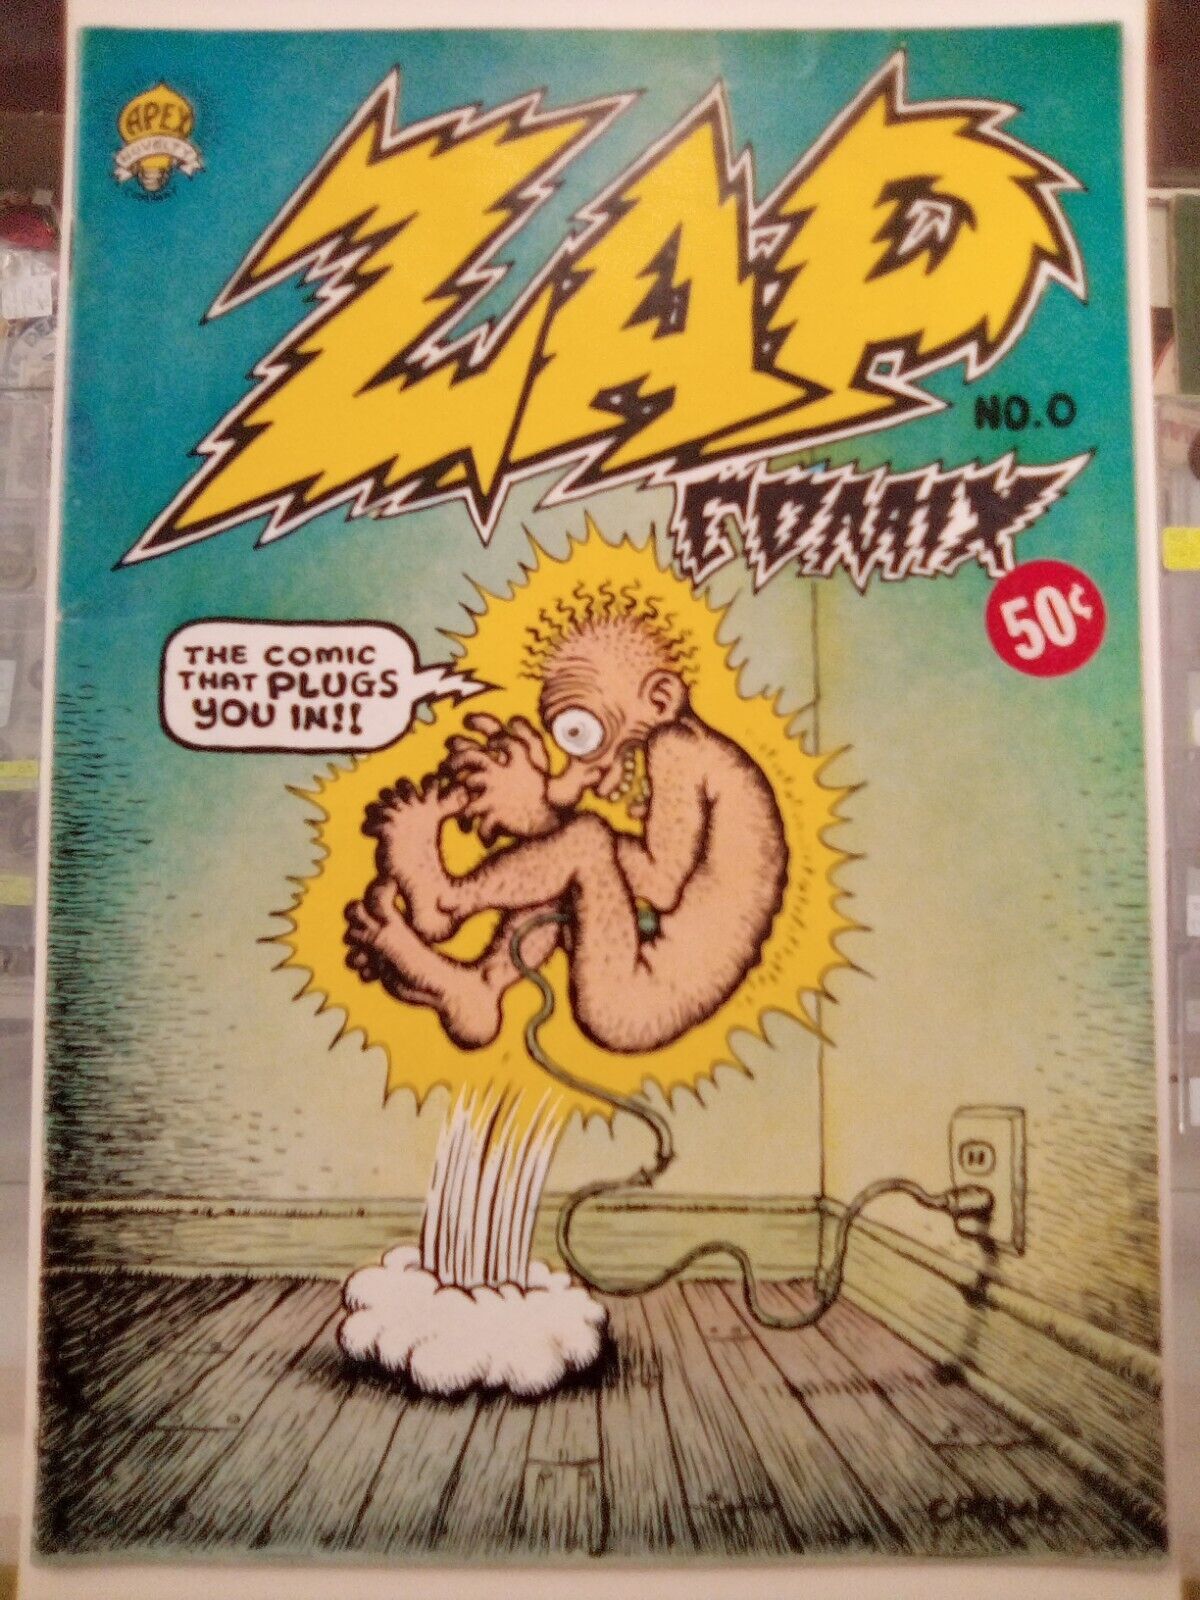 Zap Comix 0 apex Robert Crumb 50 cent cover.